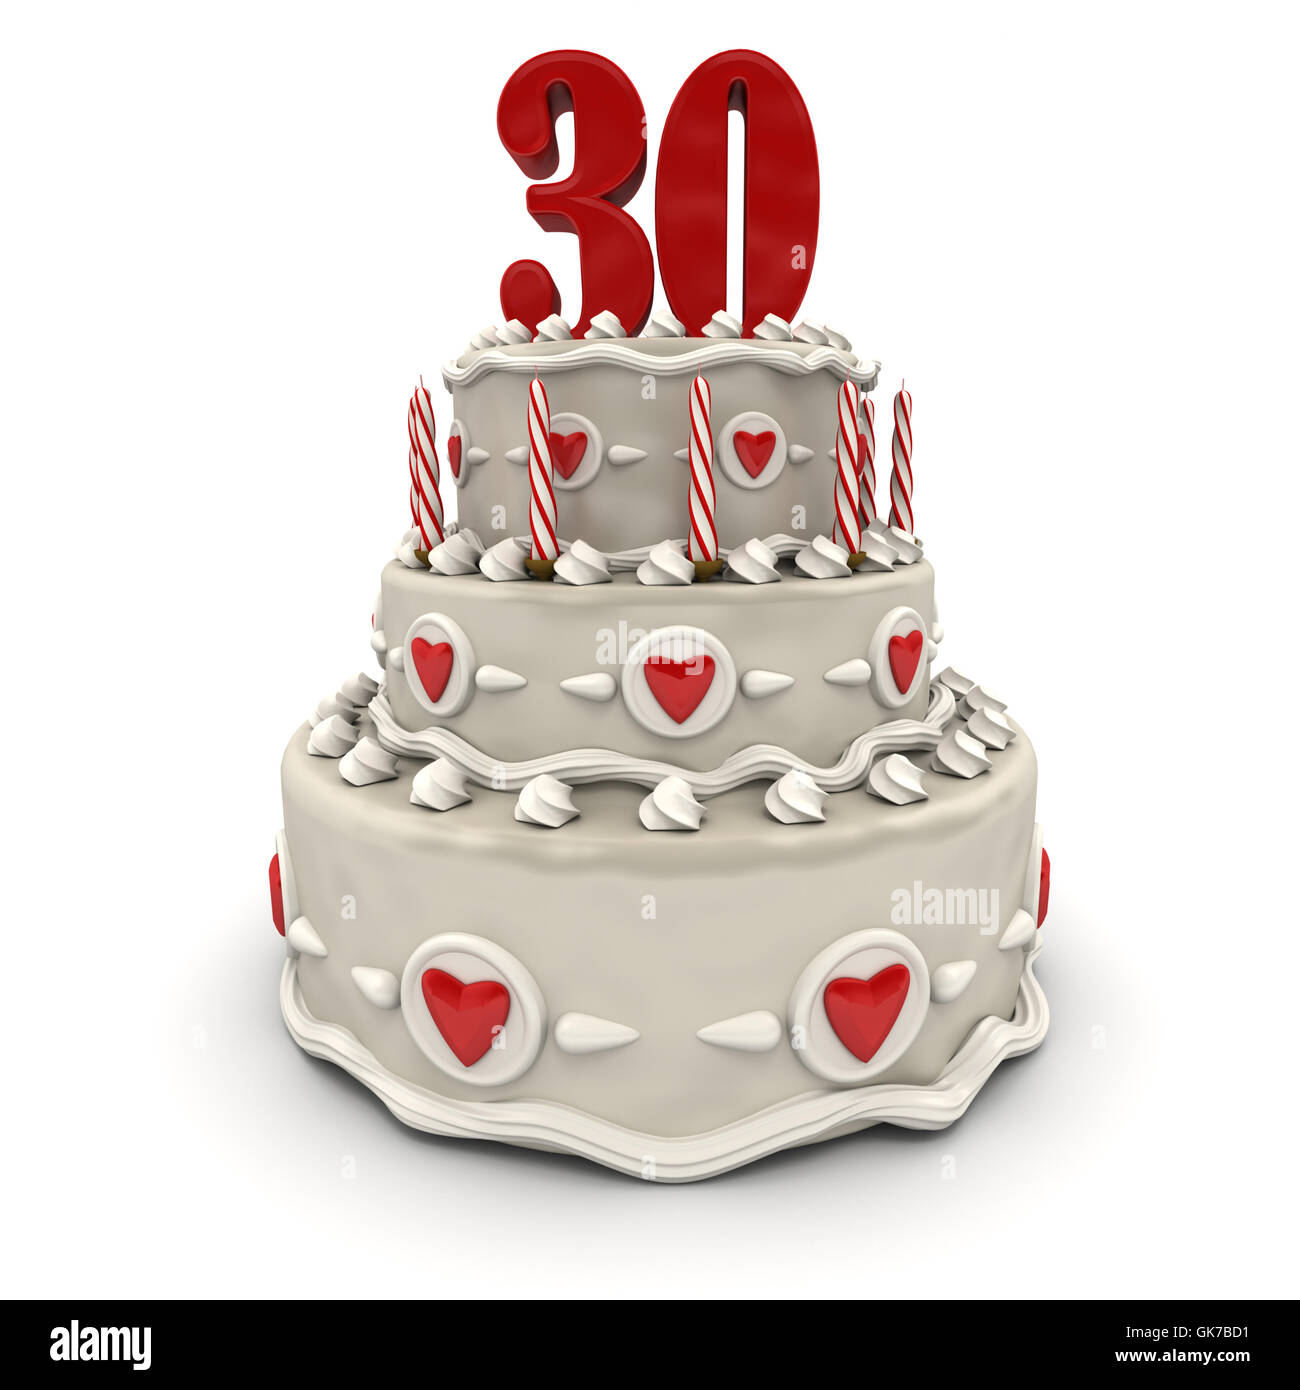 Bougies maxi 30 ans pour gâteau de fête d'anniversaire 30 ans